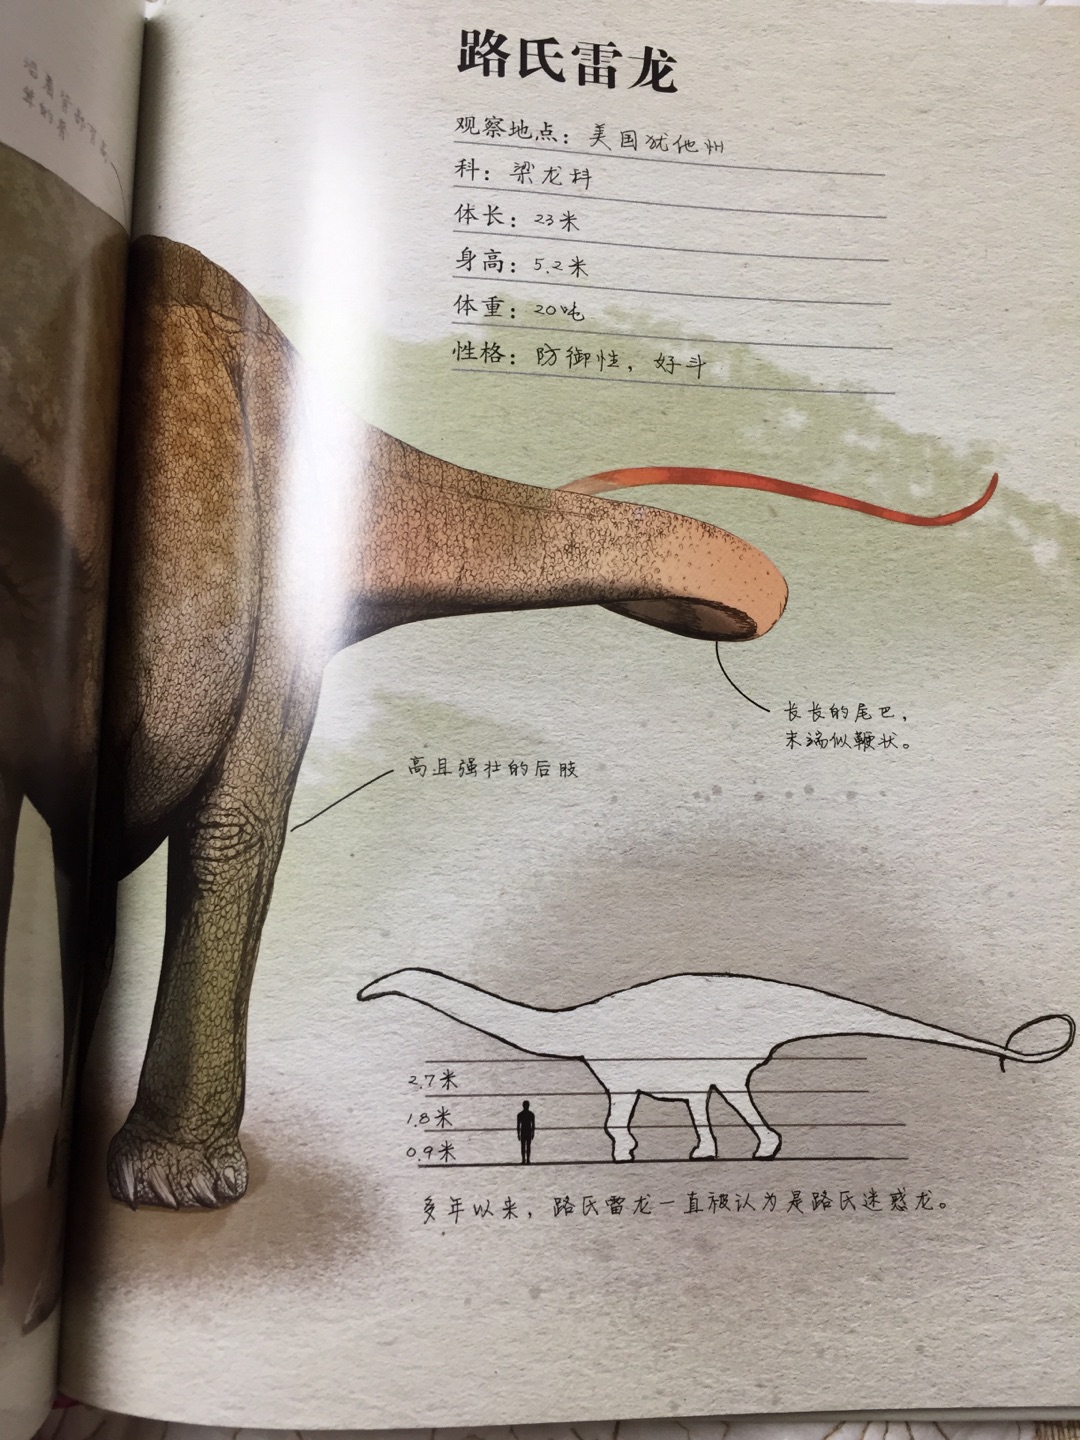 二百余张高清全彩手绘图，全部以化石和现有研究为根据，由“古生物艺术家”画出复原图，为您呈现湮没在时间深处的动植物的外貌、生活习性和行为规律，激发起人类无尽的想象。 　　收录二十余种著名的侏罗纪恐龙档案，包括凶猛的捕食者异特龙、大名鼎鼎的印板始祖鸟、生活在中国的永川龙，你不仅能了解这些恐龙的所属种类、身长、体重、习性，还能看到它们和人类的体型对比，看到每种恐龙的身体细节、生活场景。 　　获得由美国自然科学教师协会选出的2017年美国青少年杰出科普图书。 　　这本书是想象和现实的融合，是艺术和科学强有力合作的证明。 【内容简介】跟我们一起回到人类诞生之前的远古地球，当时庞然大物漫步在地球上，爬行类统治着天空。那是一个壮丽且极度危险的时代——侏罗纪晚期。回到1.5亿年前的火山和史前热带森林。与巨型蜥脚类一起行走，它们每走一步都会从地上传来地震波。与超级捕食者一起奔跑，它们在不断捕食猎物。与早期翼龙一起飞上天空。将当前的古生物学发现和高精度的绘图结合，本书将带领读者展开时光旅行，比以往任何时候更接近史前生物。